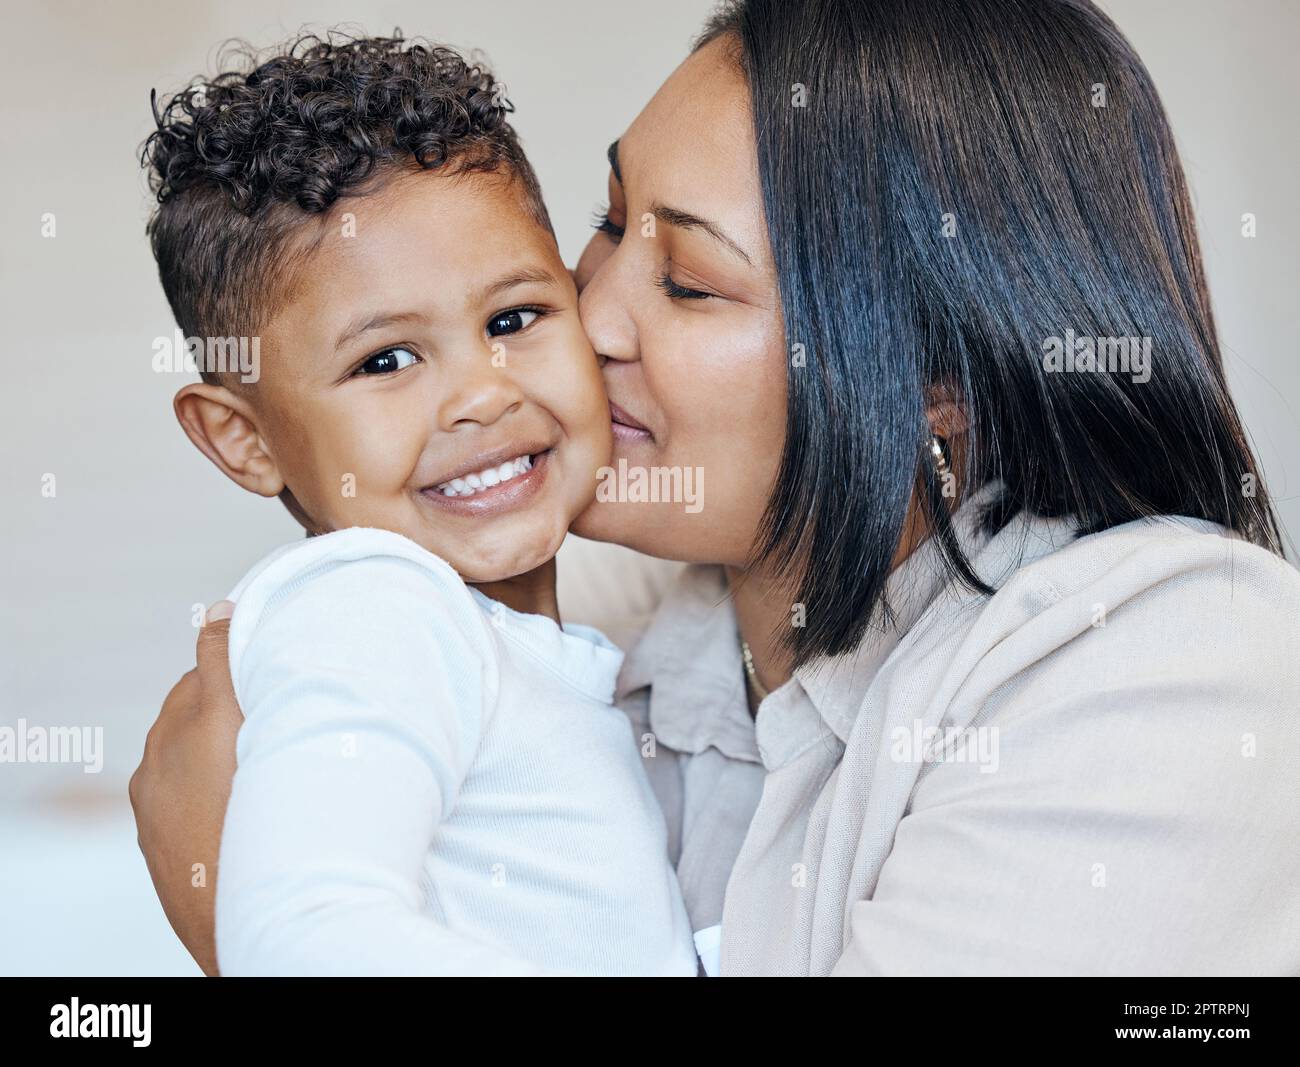 Mujer de raza mixta besando a su pequeño hijo adorable en la mejilla mientras se unen en casa. Pequeño niño hispano sonriendo y mirando feliz de ser getti Foto de stock